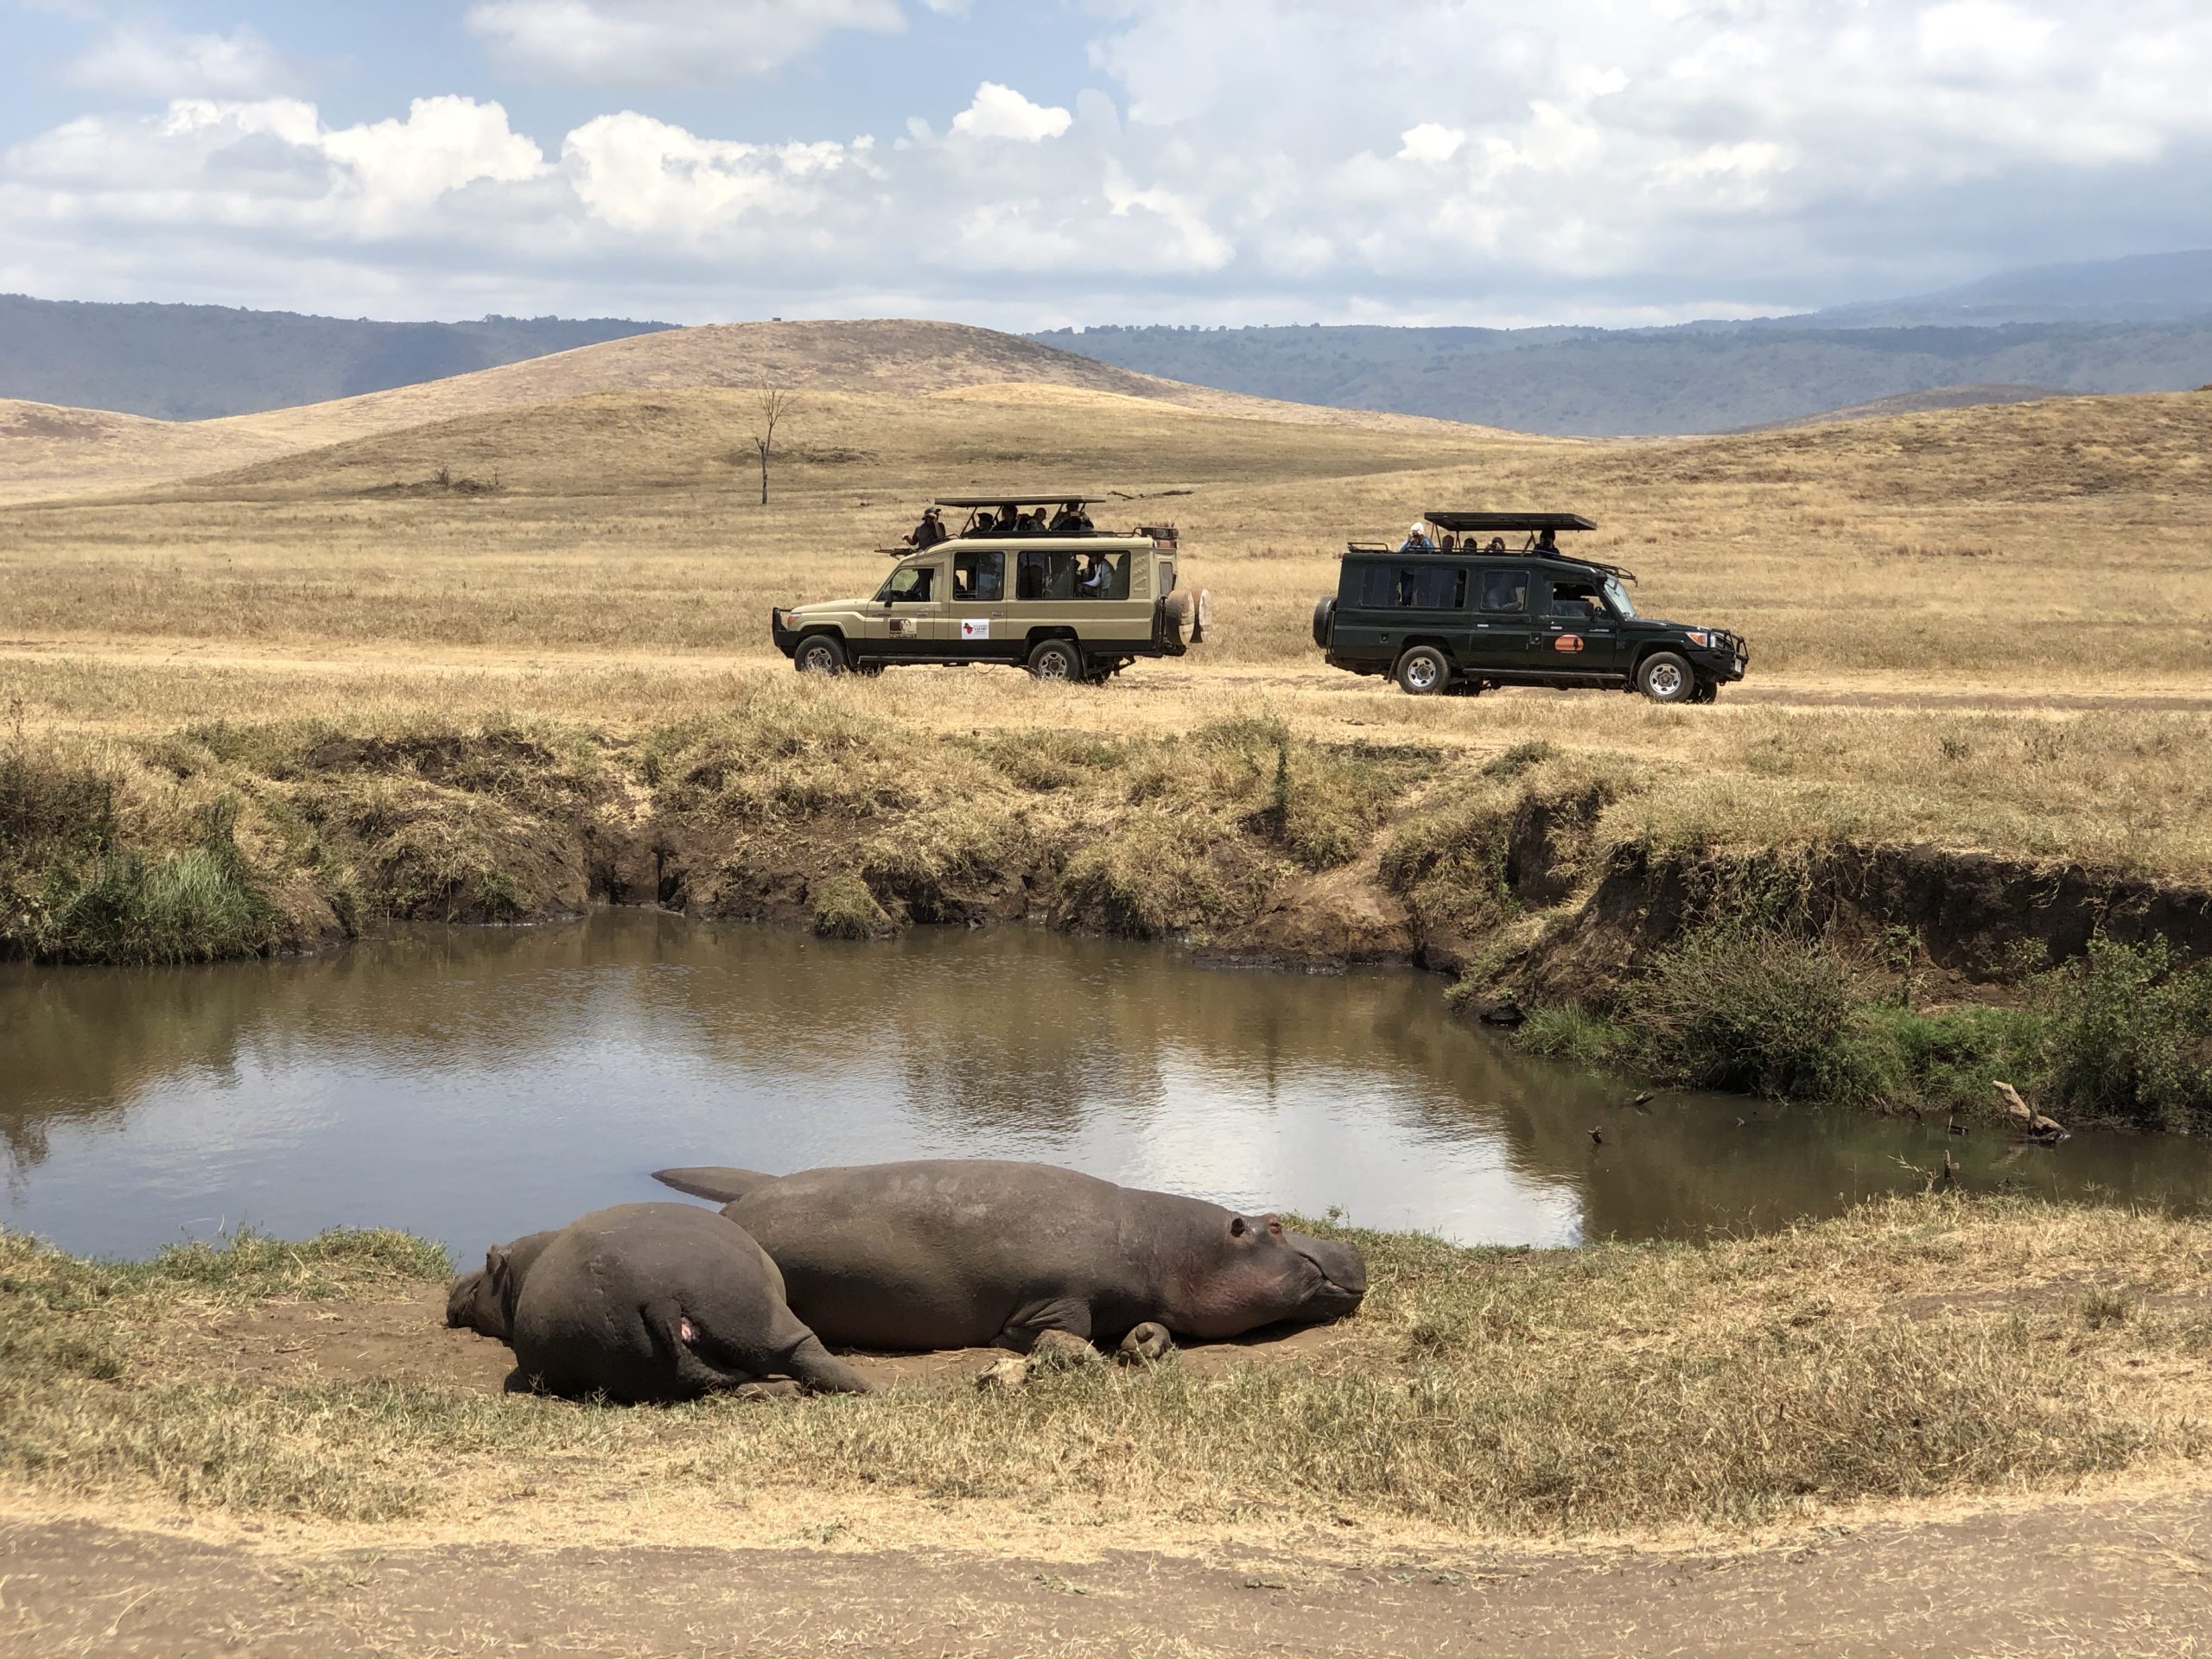 Day 4: Safari from Serengeti to Ngorongoro